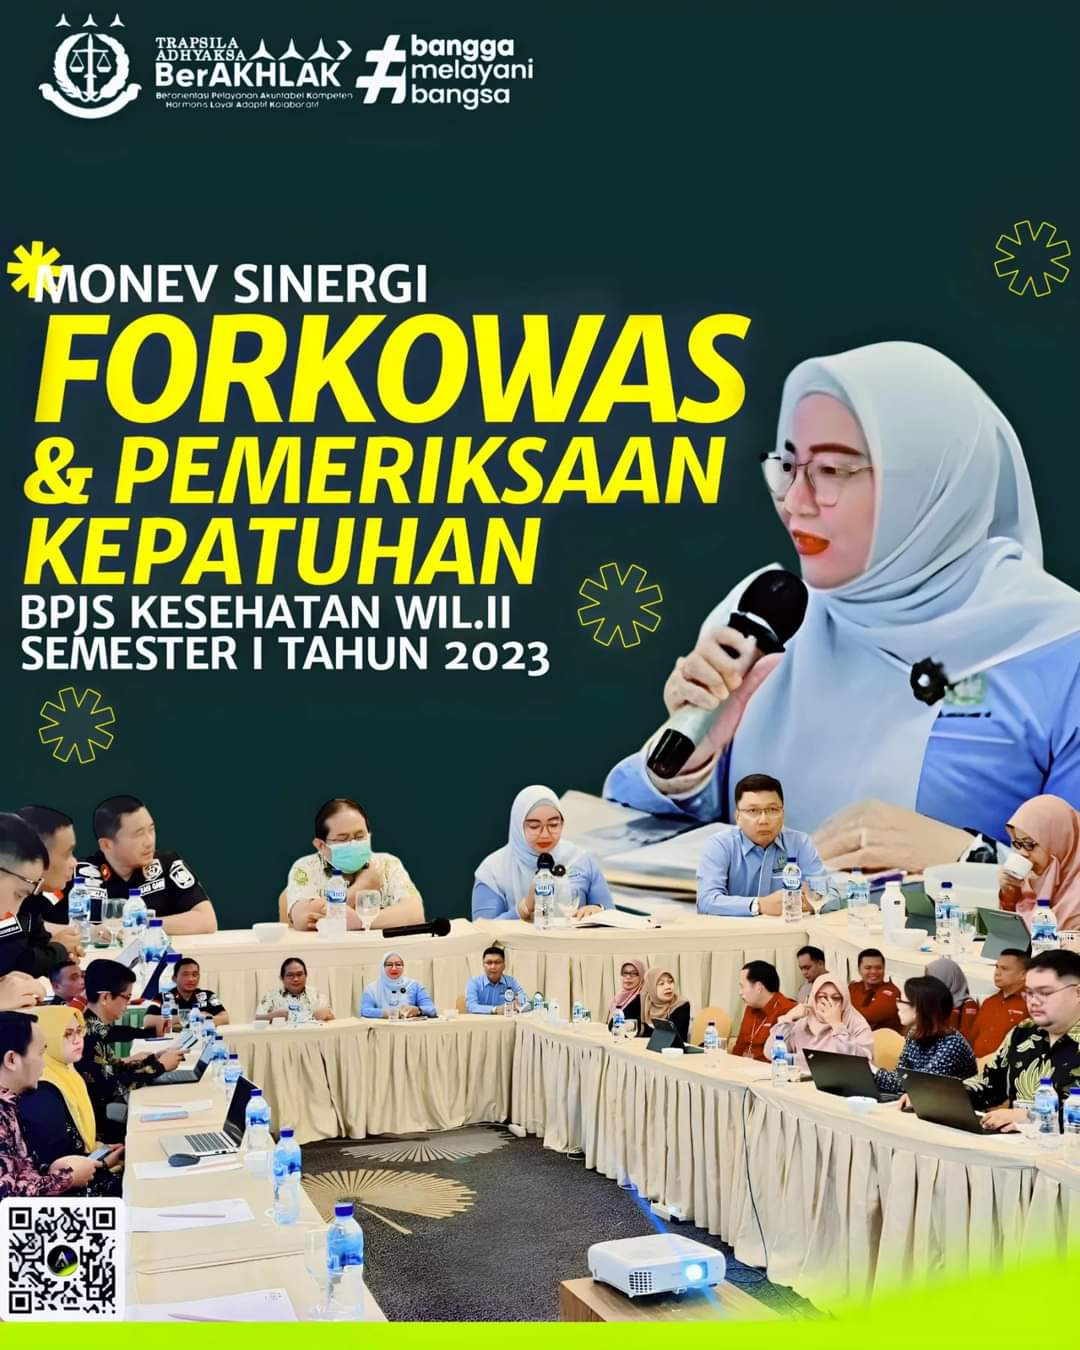 Asisten Perdata dan Tata Usaha Negara Kejaksaan Tinggi Riau hadiri Monev Sinergi Forkowas dan Pemeriksaan Kepatuhan BPJS Kesehatan Wilayah II Semester I Tahun 2023